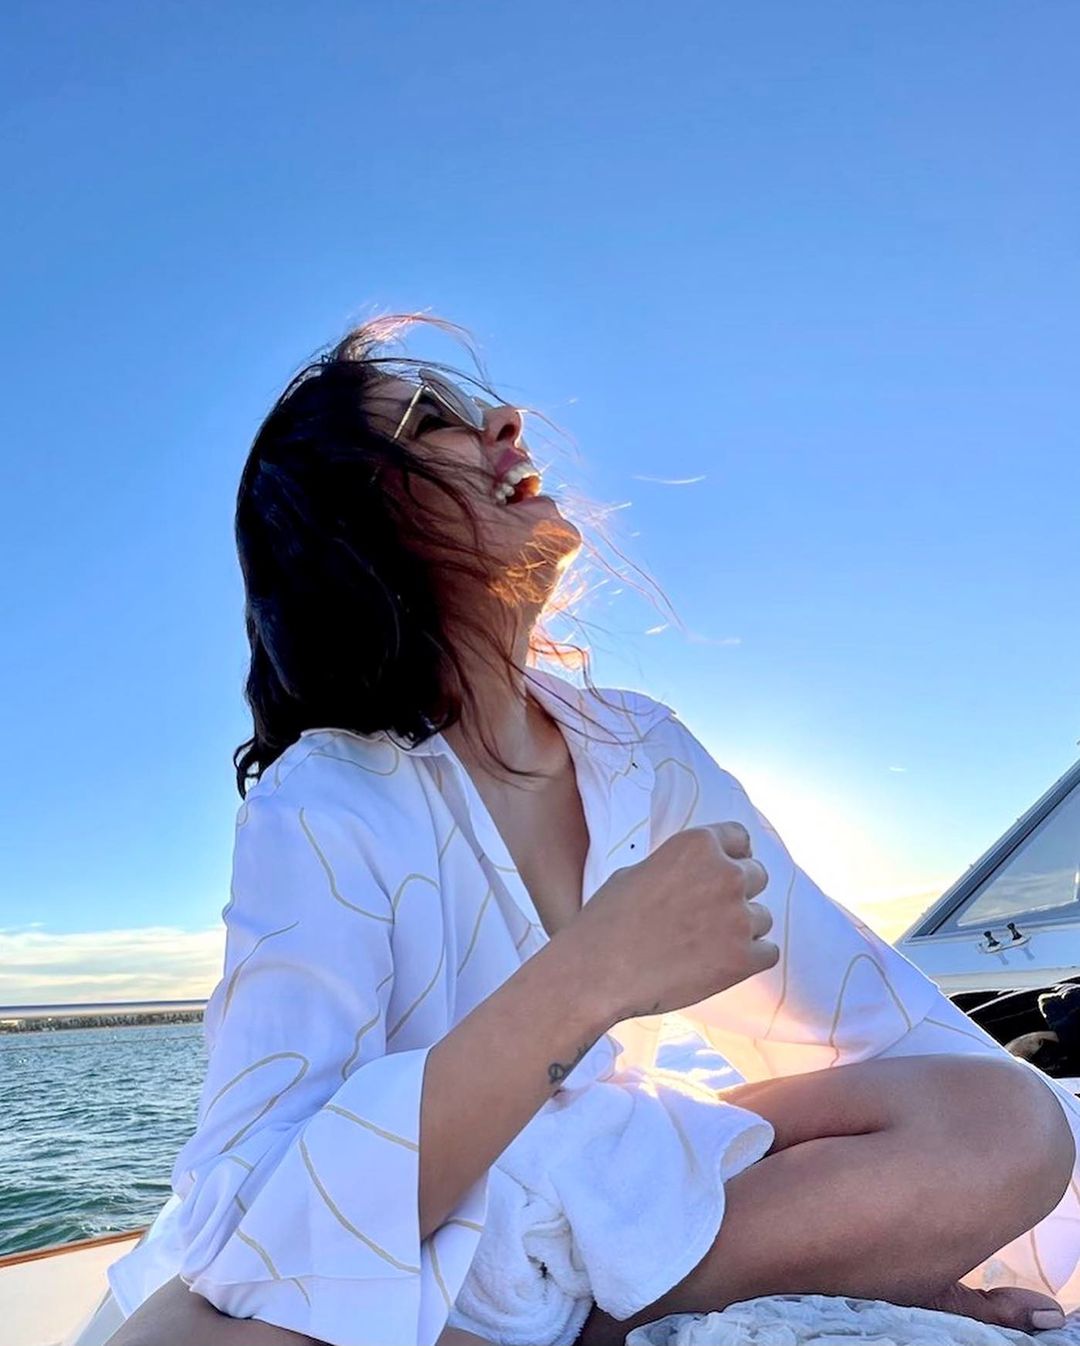 Photos n°2 : Priyanka Chopra is On a Boat!